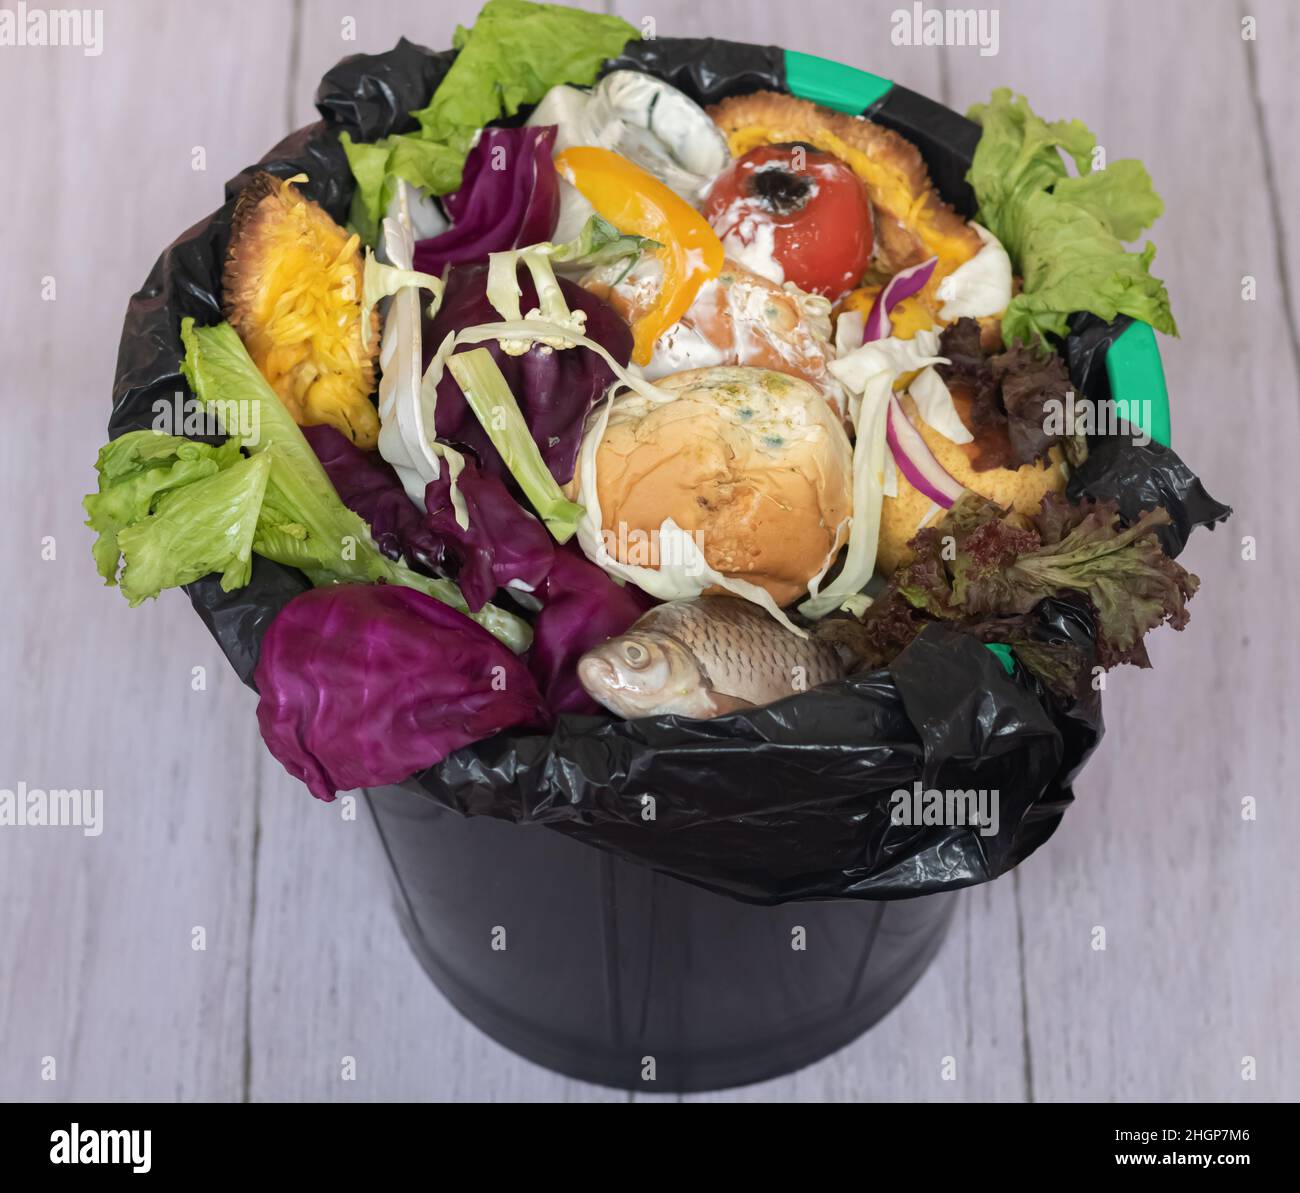 Poubelle contenant des aliments non utilisés.Les déchets alimentaires sont  un problème mondial.Gros plan.Concept de gaspillage et de mise au rebut des  aliments inutilisés.Vue de dessus Photo Stock - Alamy